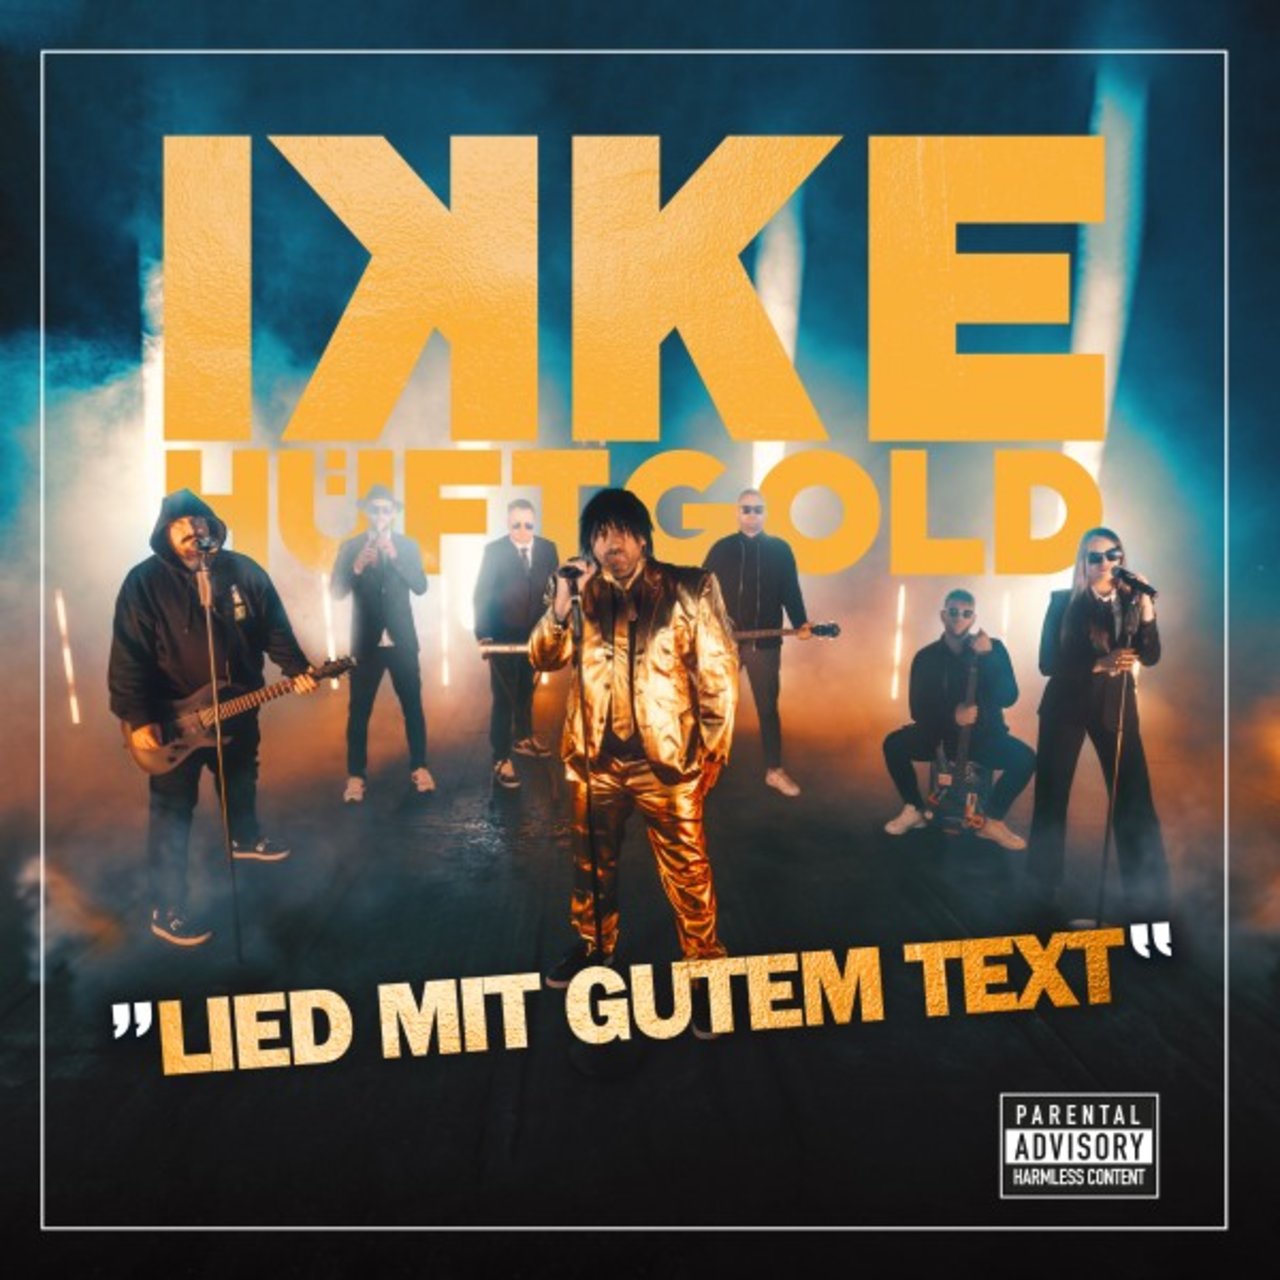 Ikke Hüftgold — Lied mit gutem Text cover artwork